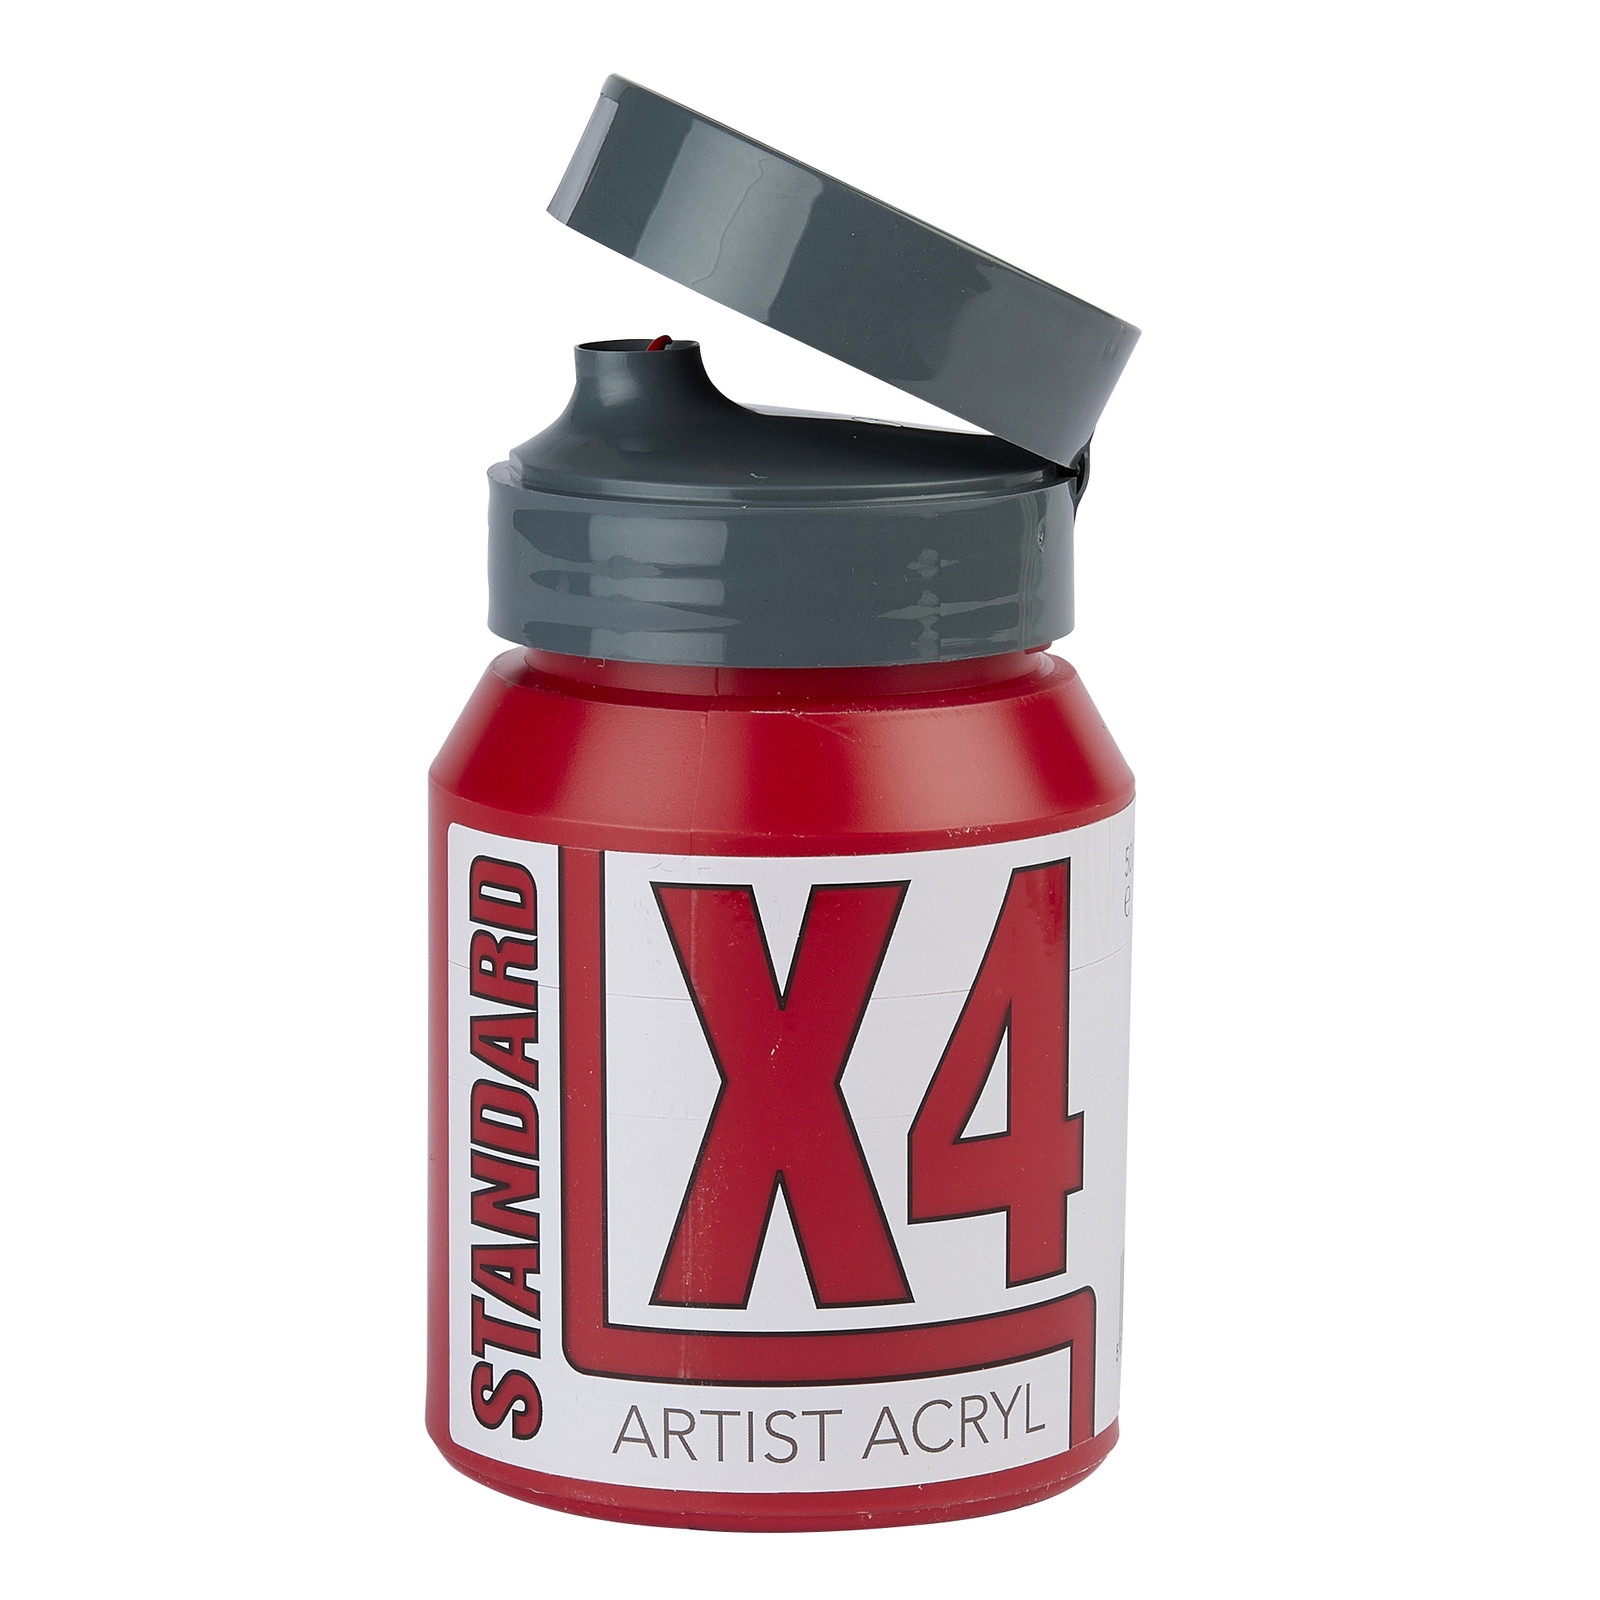 Specialist Crafts X4 Standard Carmine Acryl/Acrylic Paint - 500ml - Each